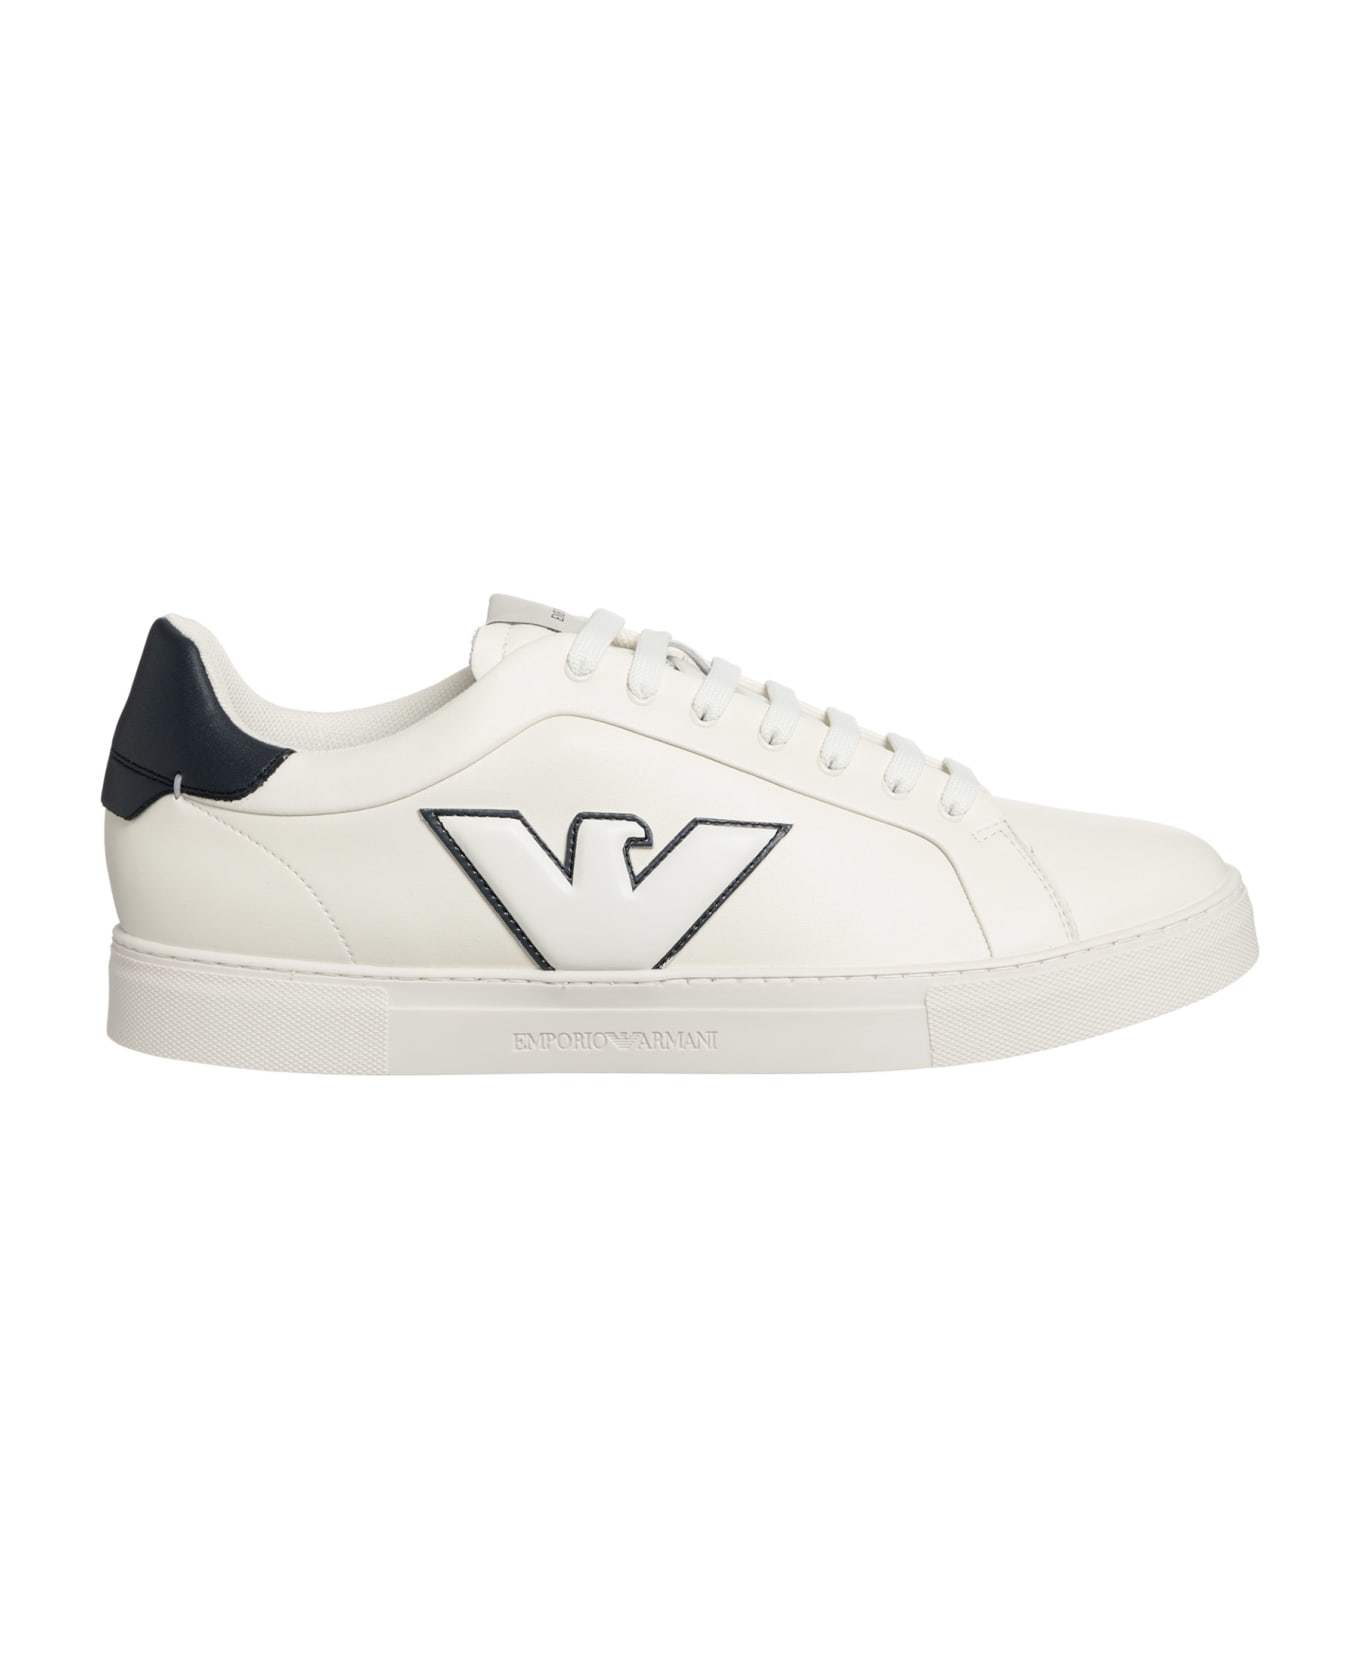 Emporio Armani Leather Sneakers - White, navy